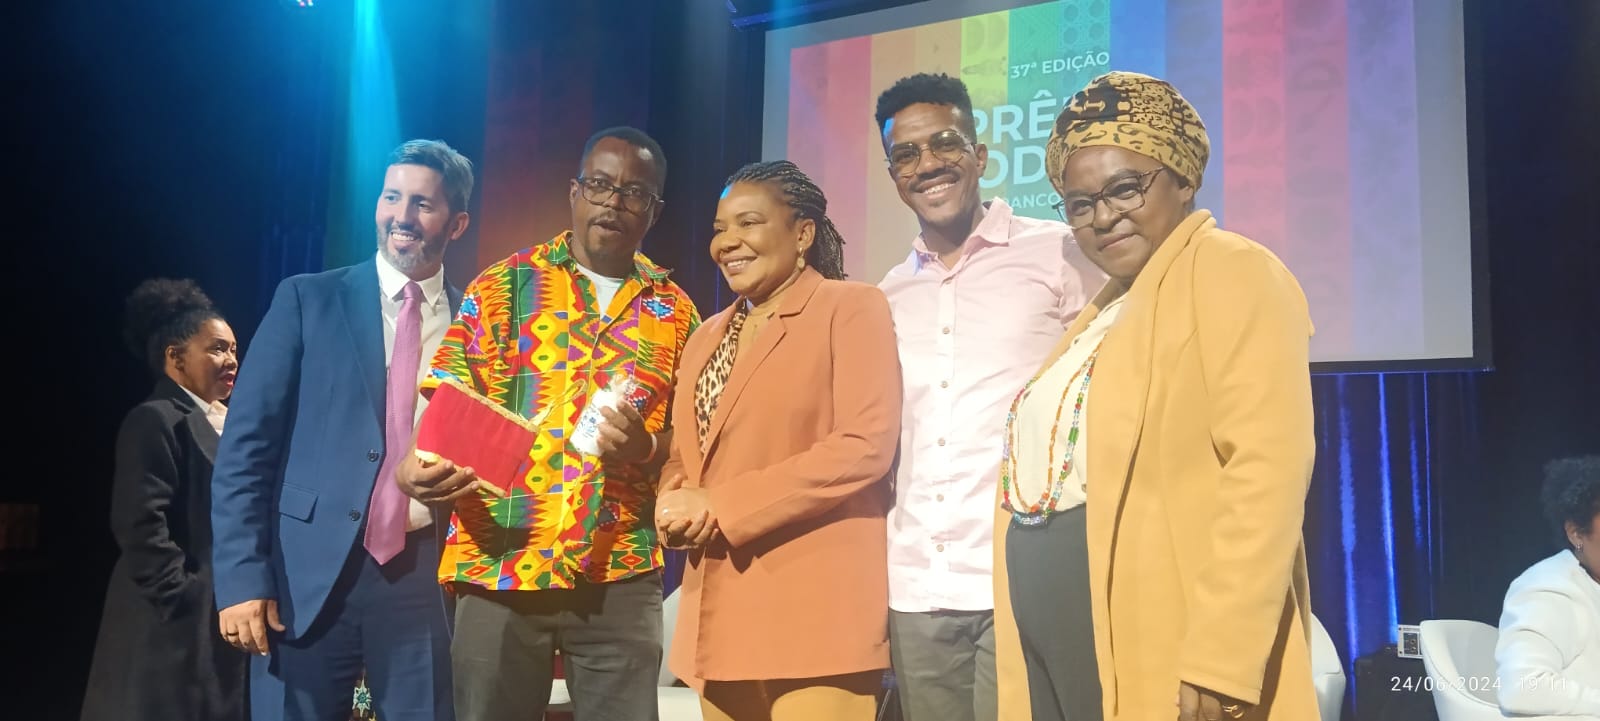 Presidente da Associação Afro-Ancestral de Poços vence prêmio do Iphan